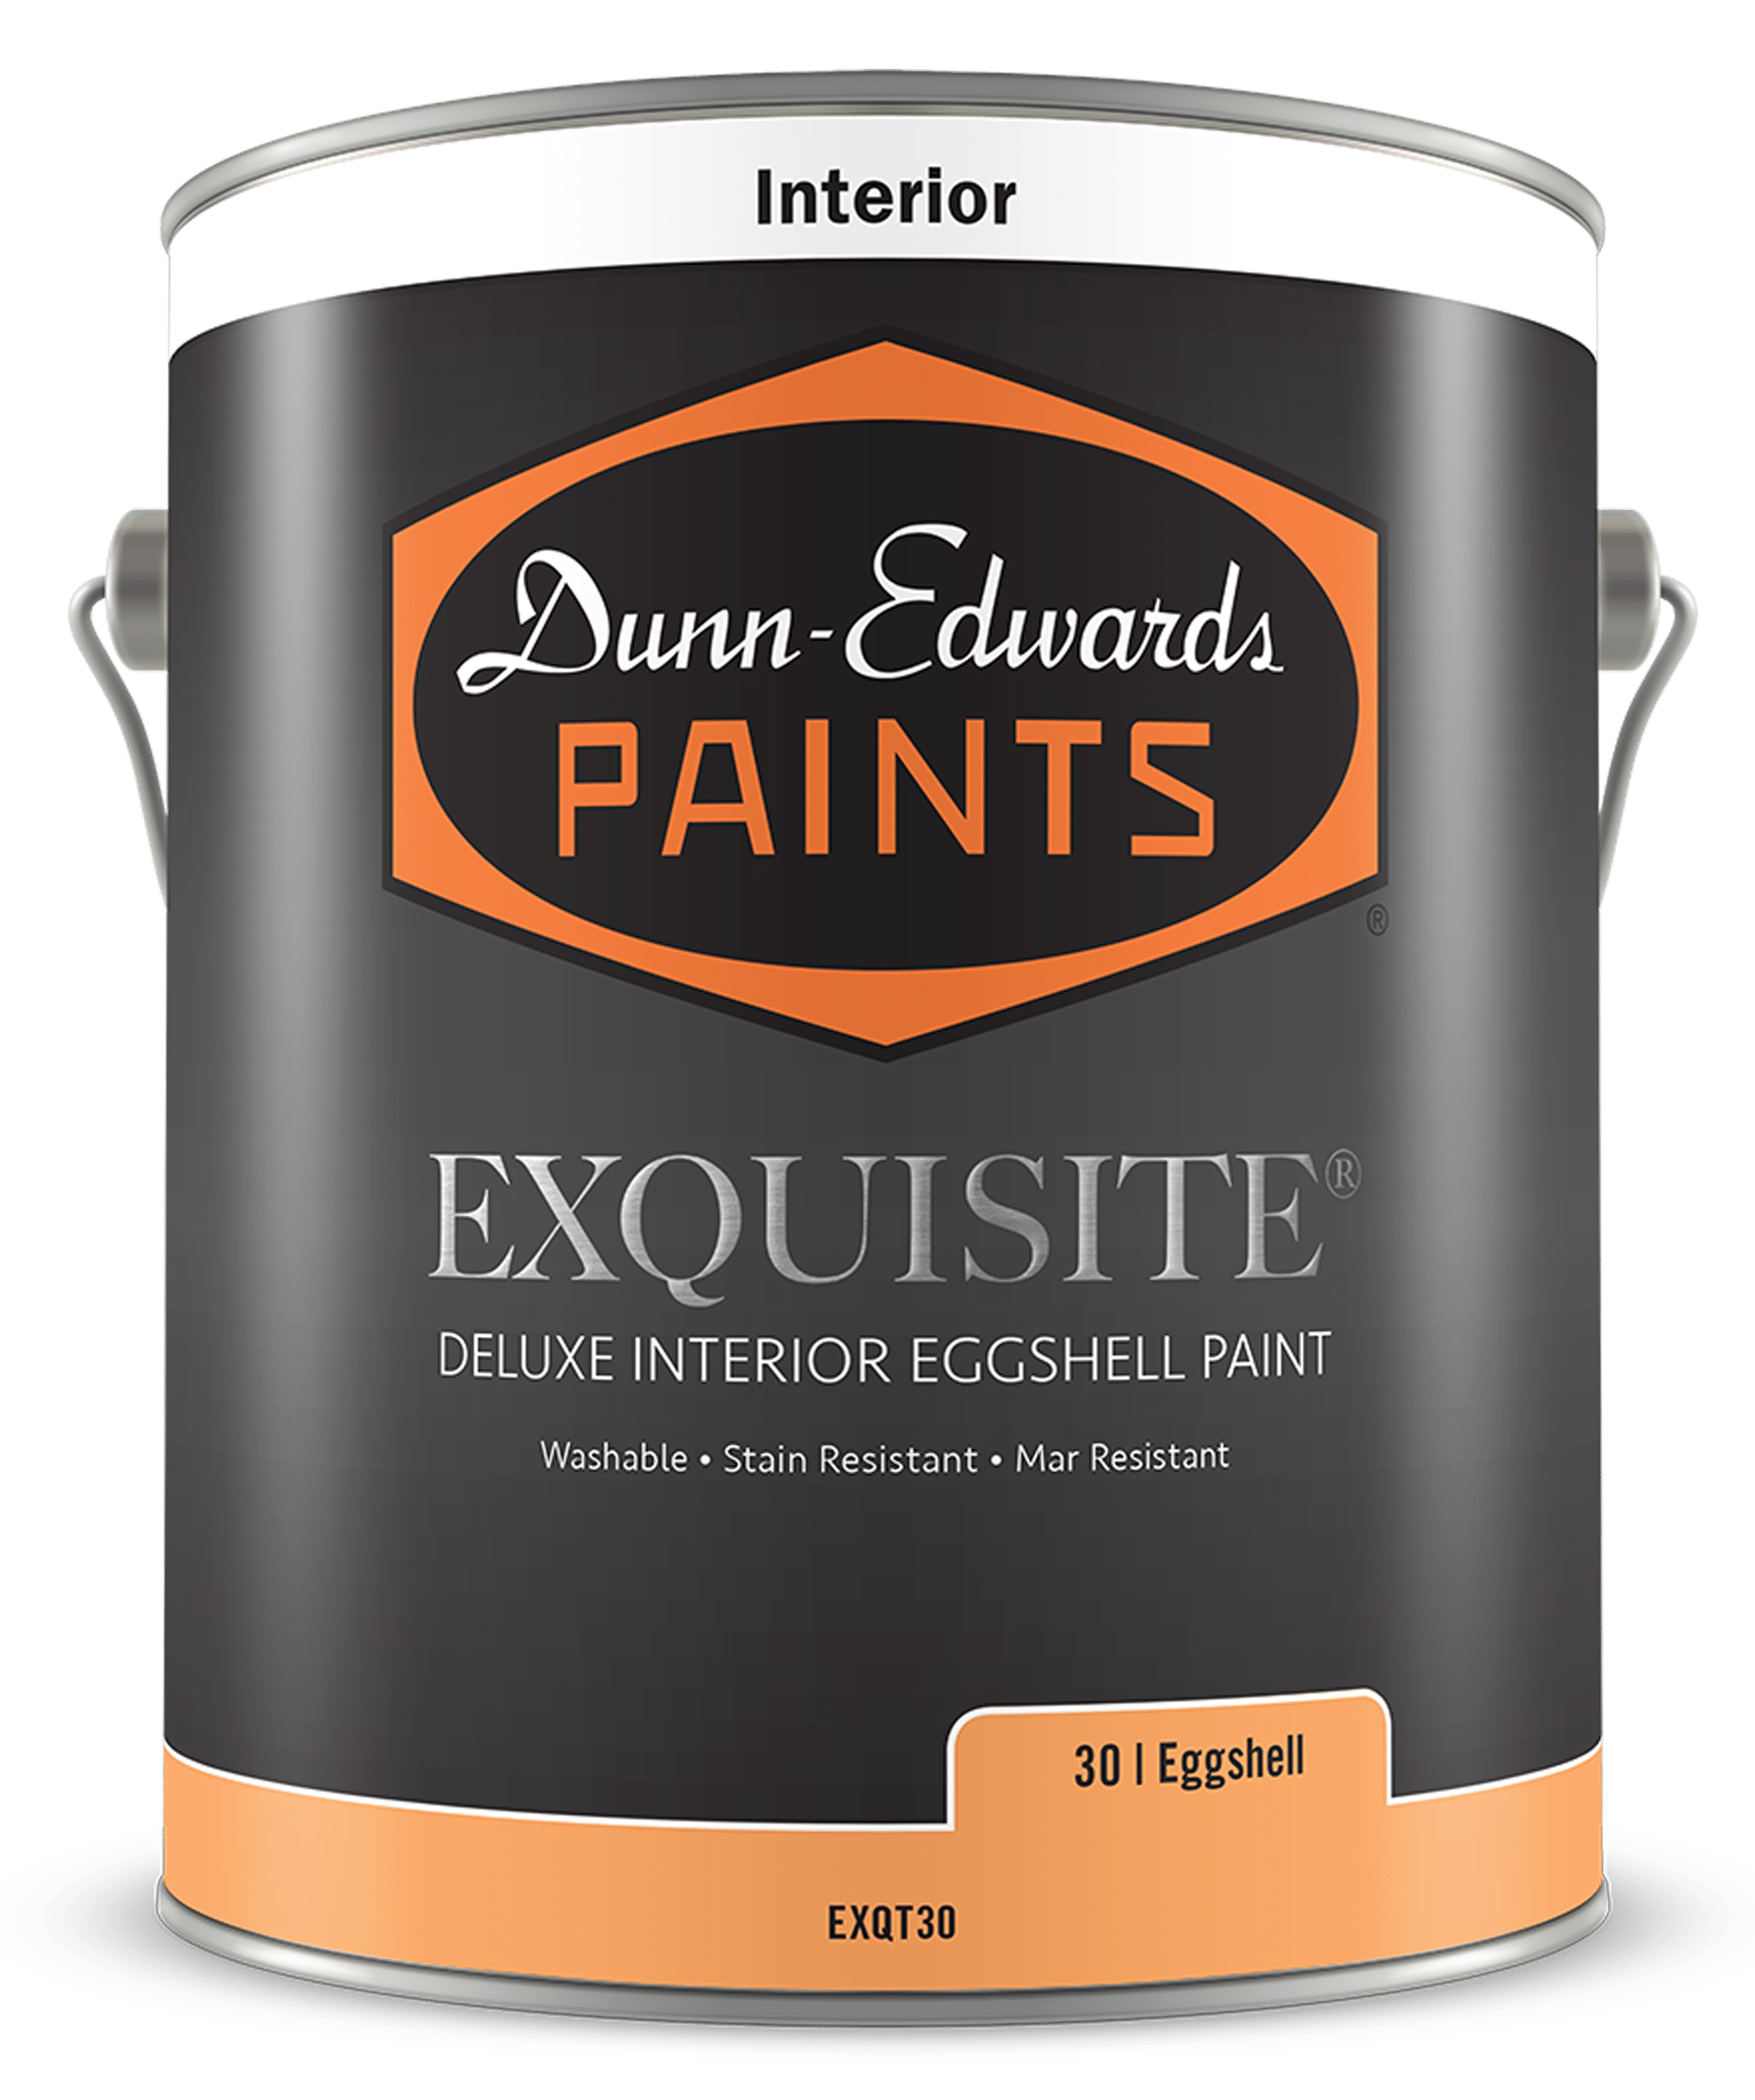 Exquisite Eggshell Paint Dunn-Edwards Paints